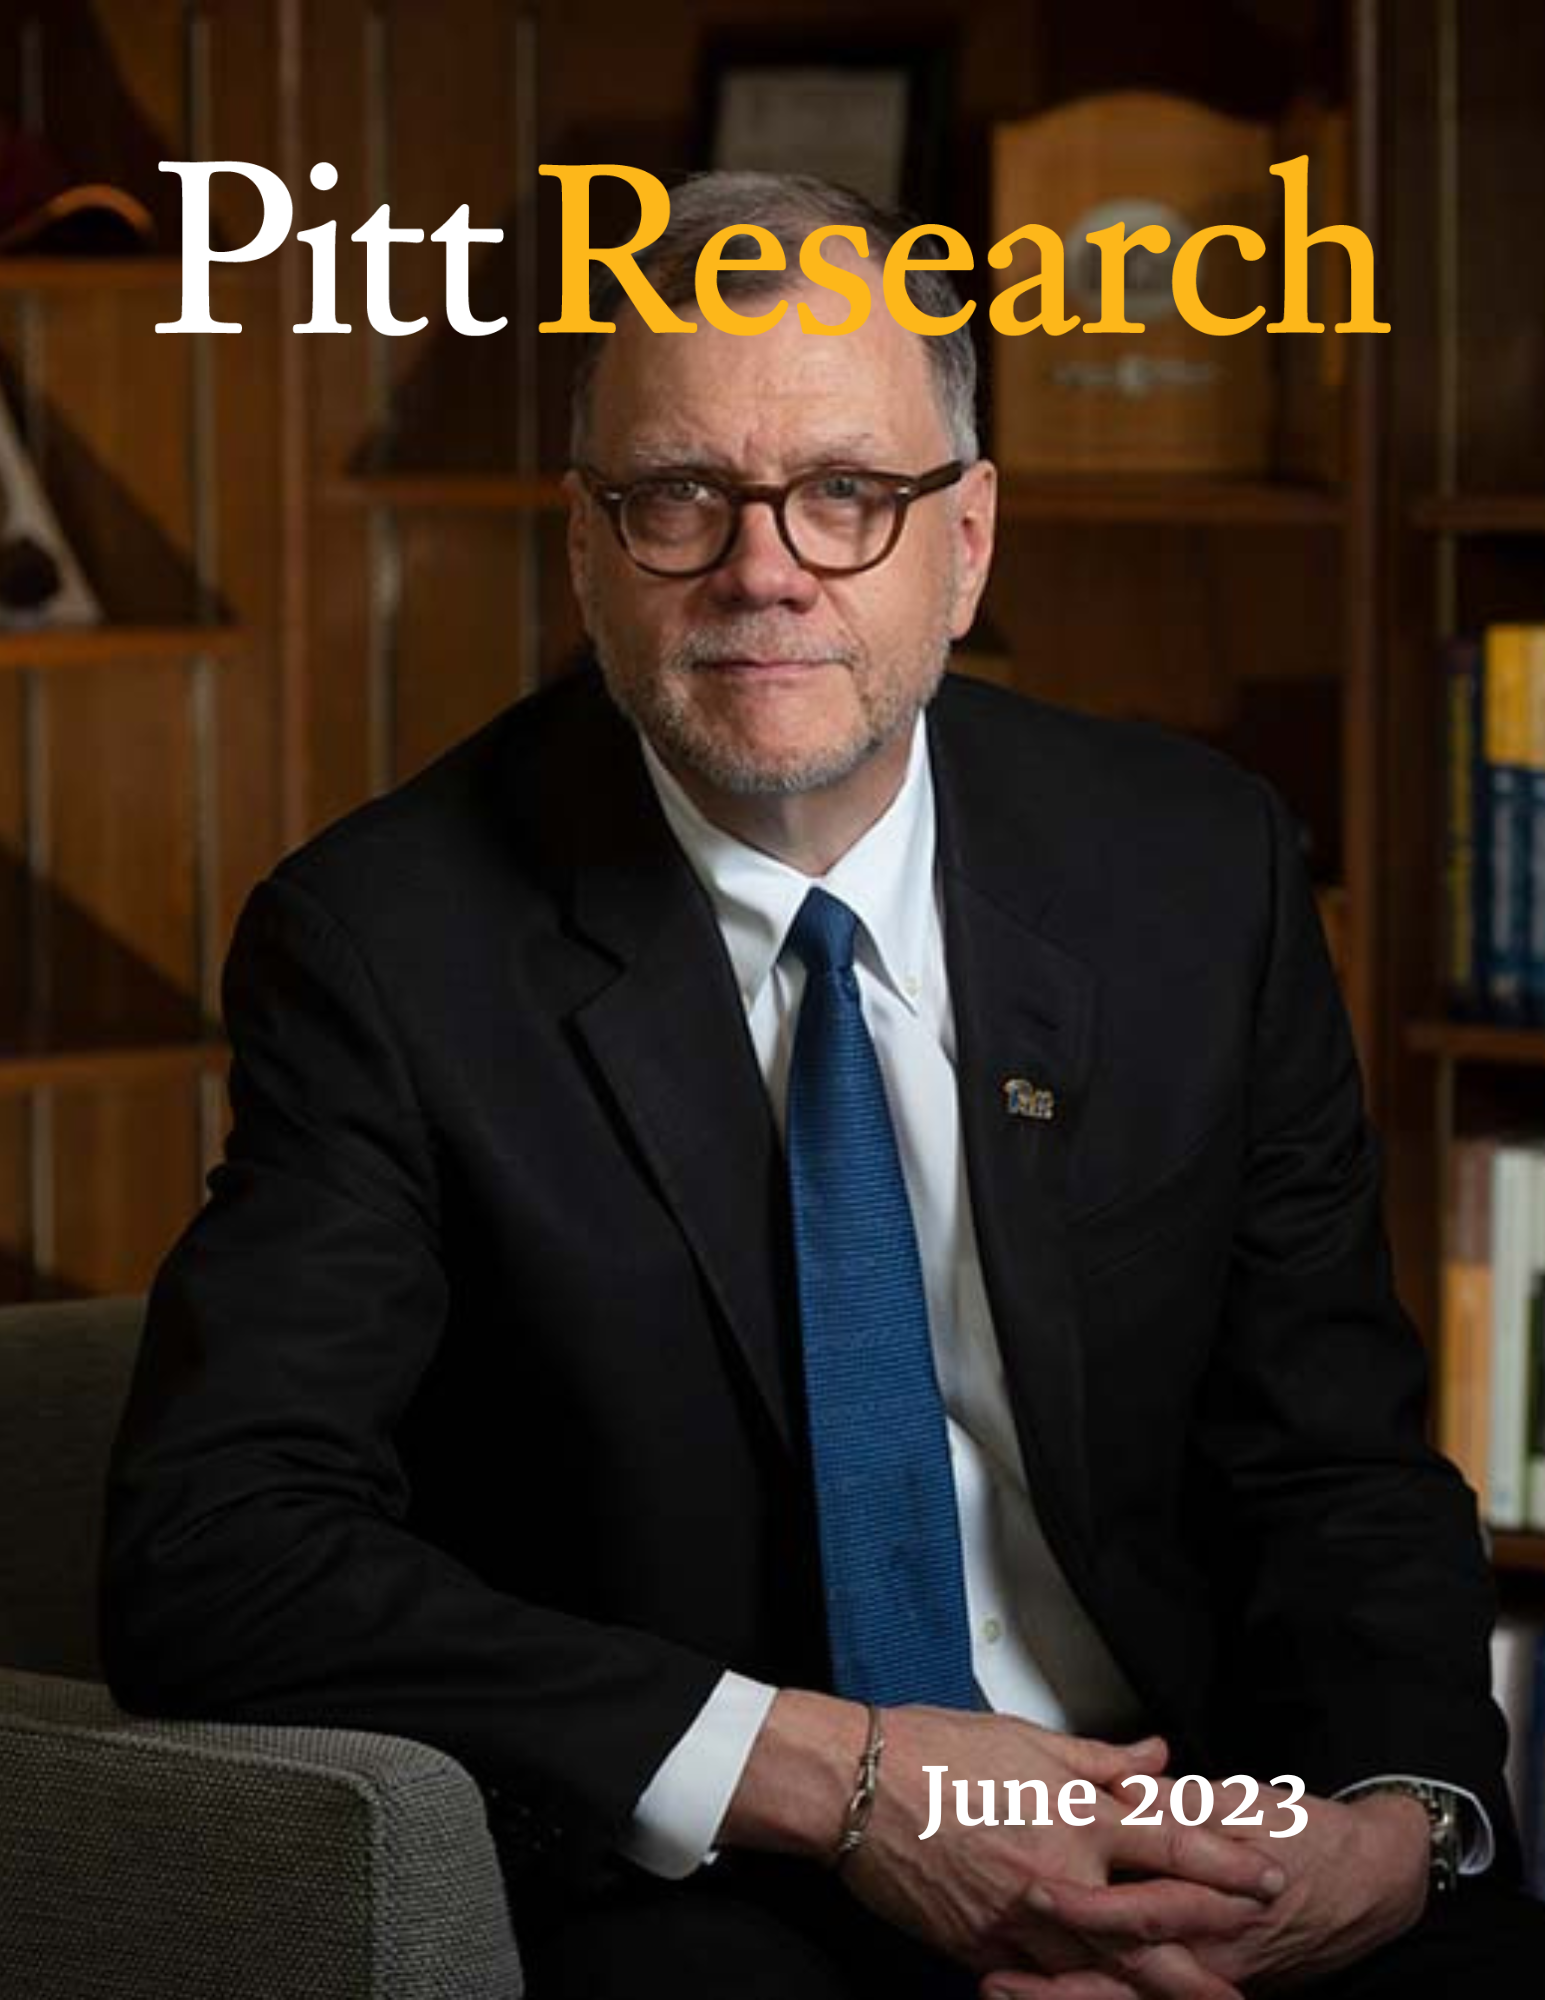 Pitt Research Newsletter for June 2023